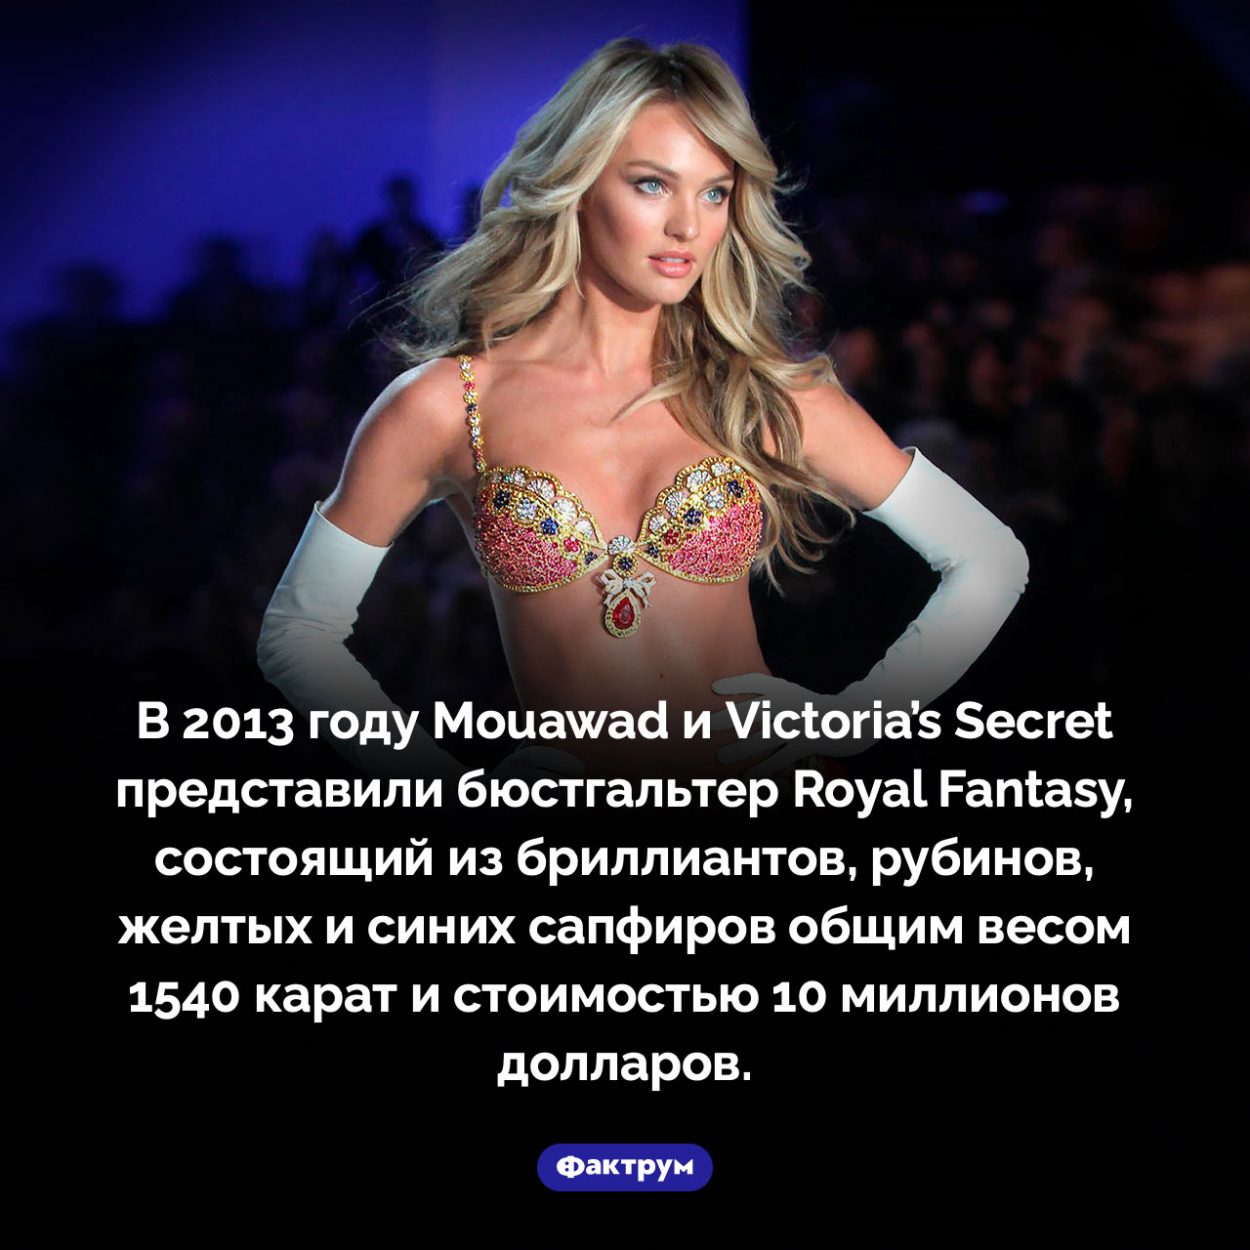 Бюстгальтер за 10 миллионов долларов. В 2013 году Mouawad и Victoria’s Secret представили бюстгальтер Royal Fantasy, состоящий из бриллиантов, рубинов, желтых и синих сапфиров общим весом 1540 карат и стоимостью 10 миллионов долларов.